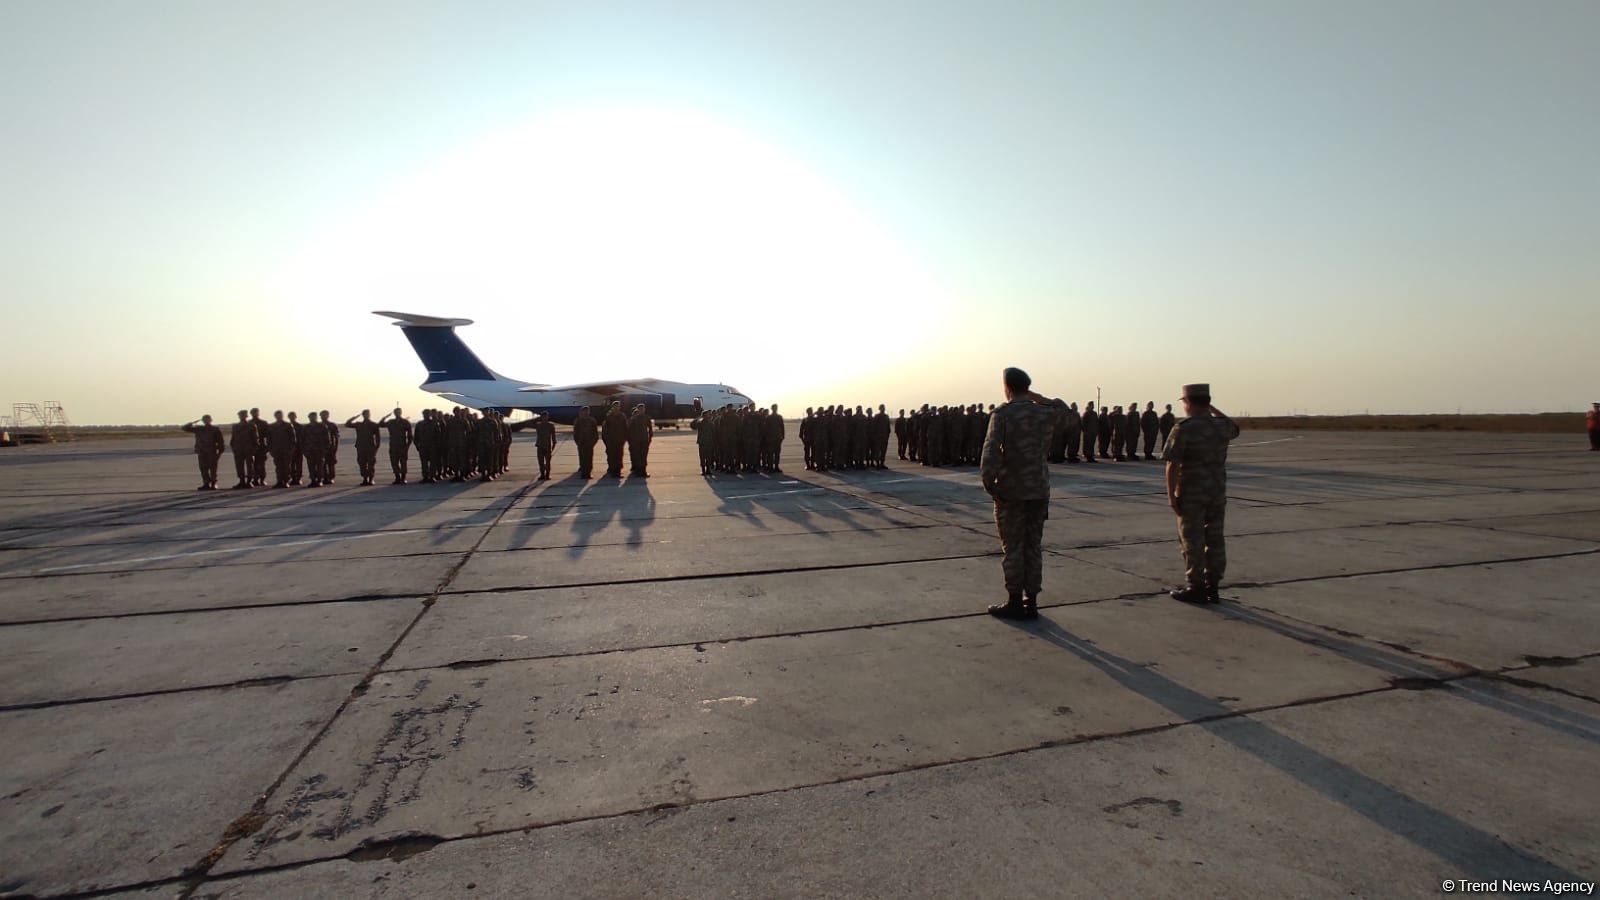 Les soldats de la paix azerbaïdjanais regagnent leur pays après avoir accompli leur mission en Afghanistan